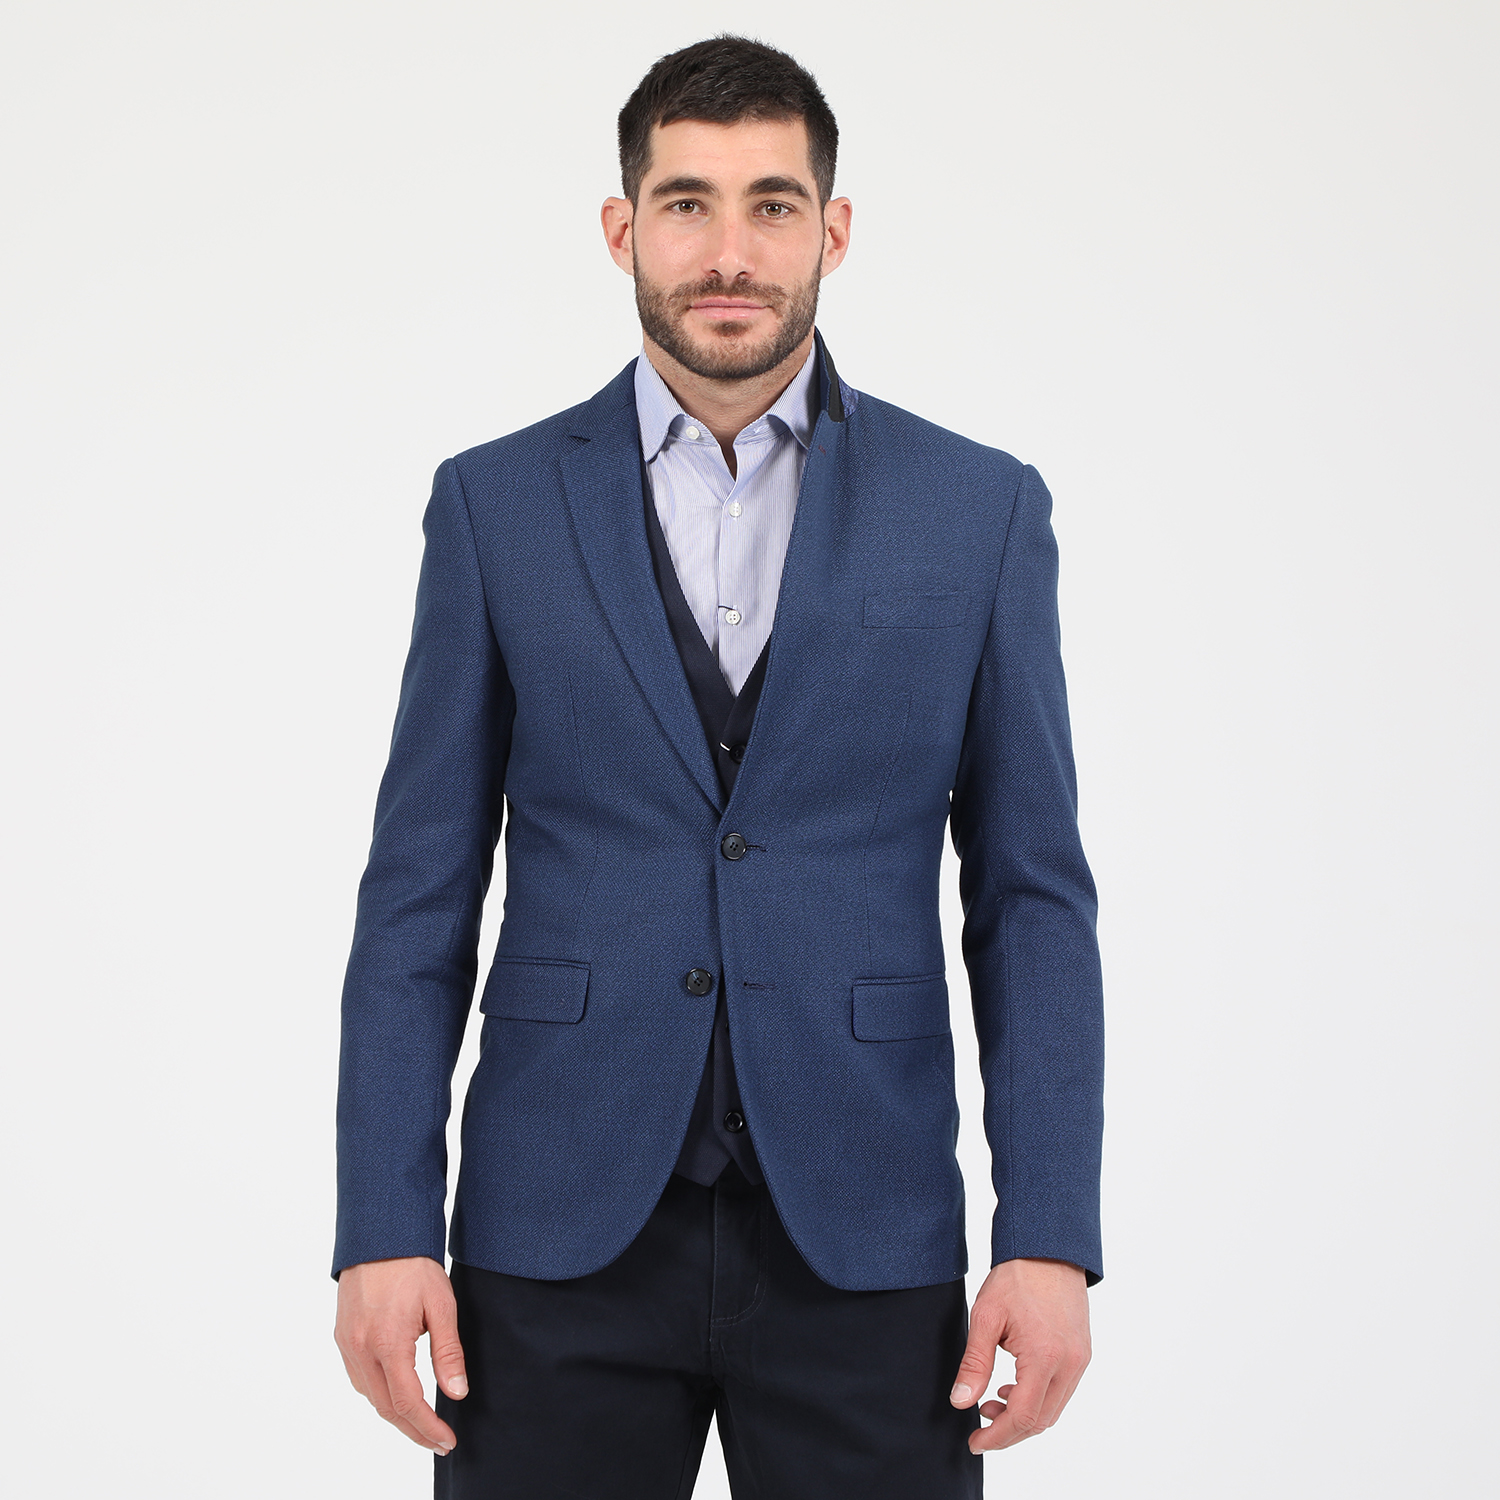 Ανδρικά/Ρούχα/Πανωφόρια/Σακάκια MARTIN & CO - Ανδρικό σακάκι blazer MARTIN & CO SLIM BLAZER μπλε